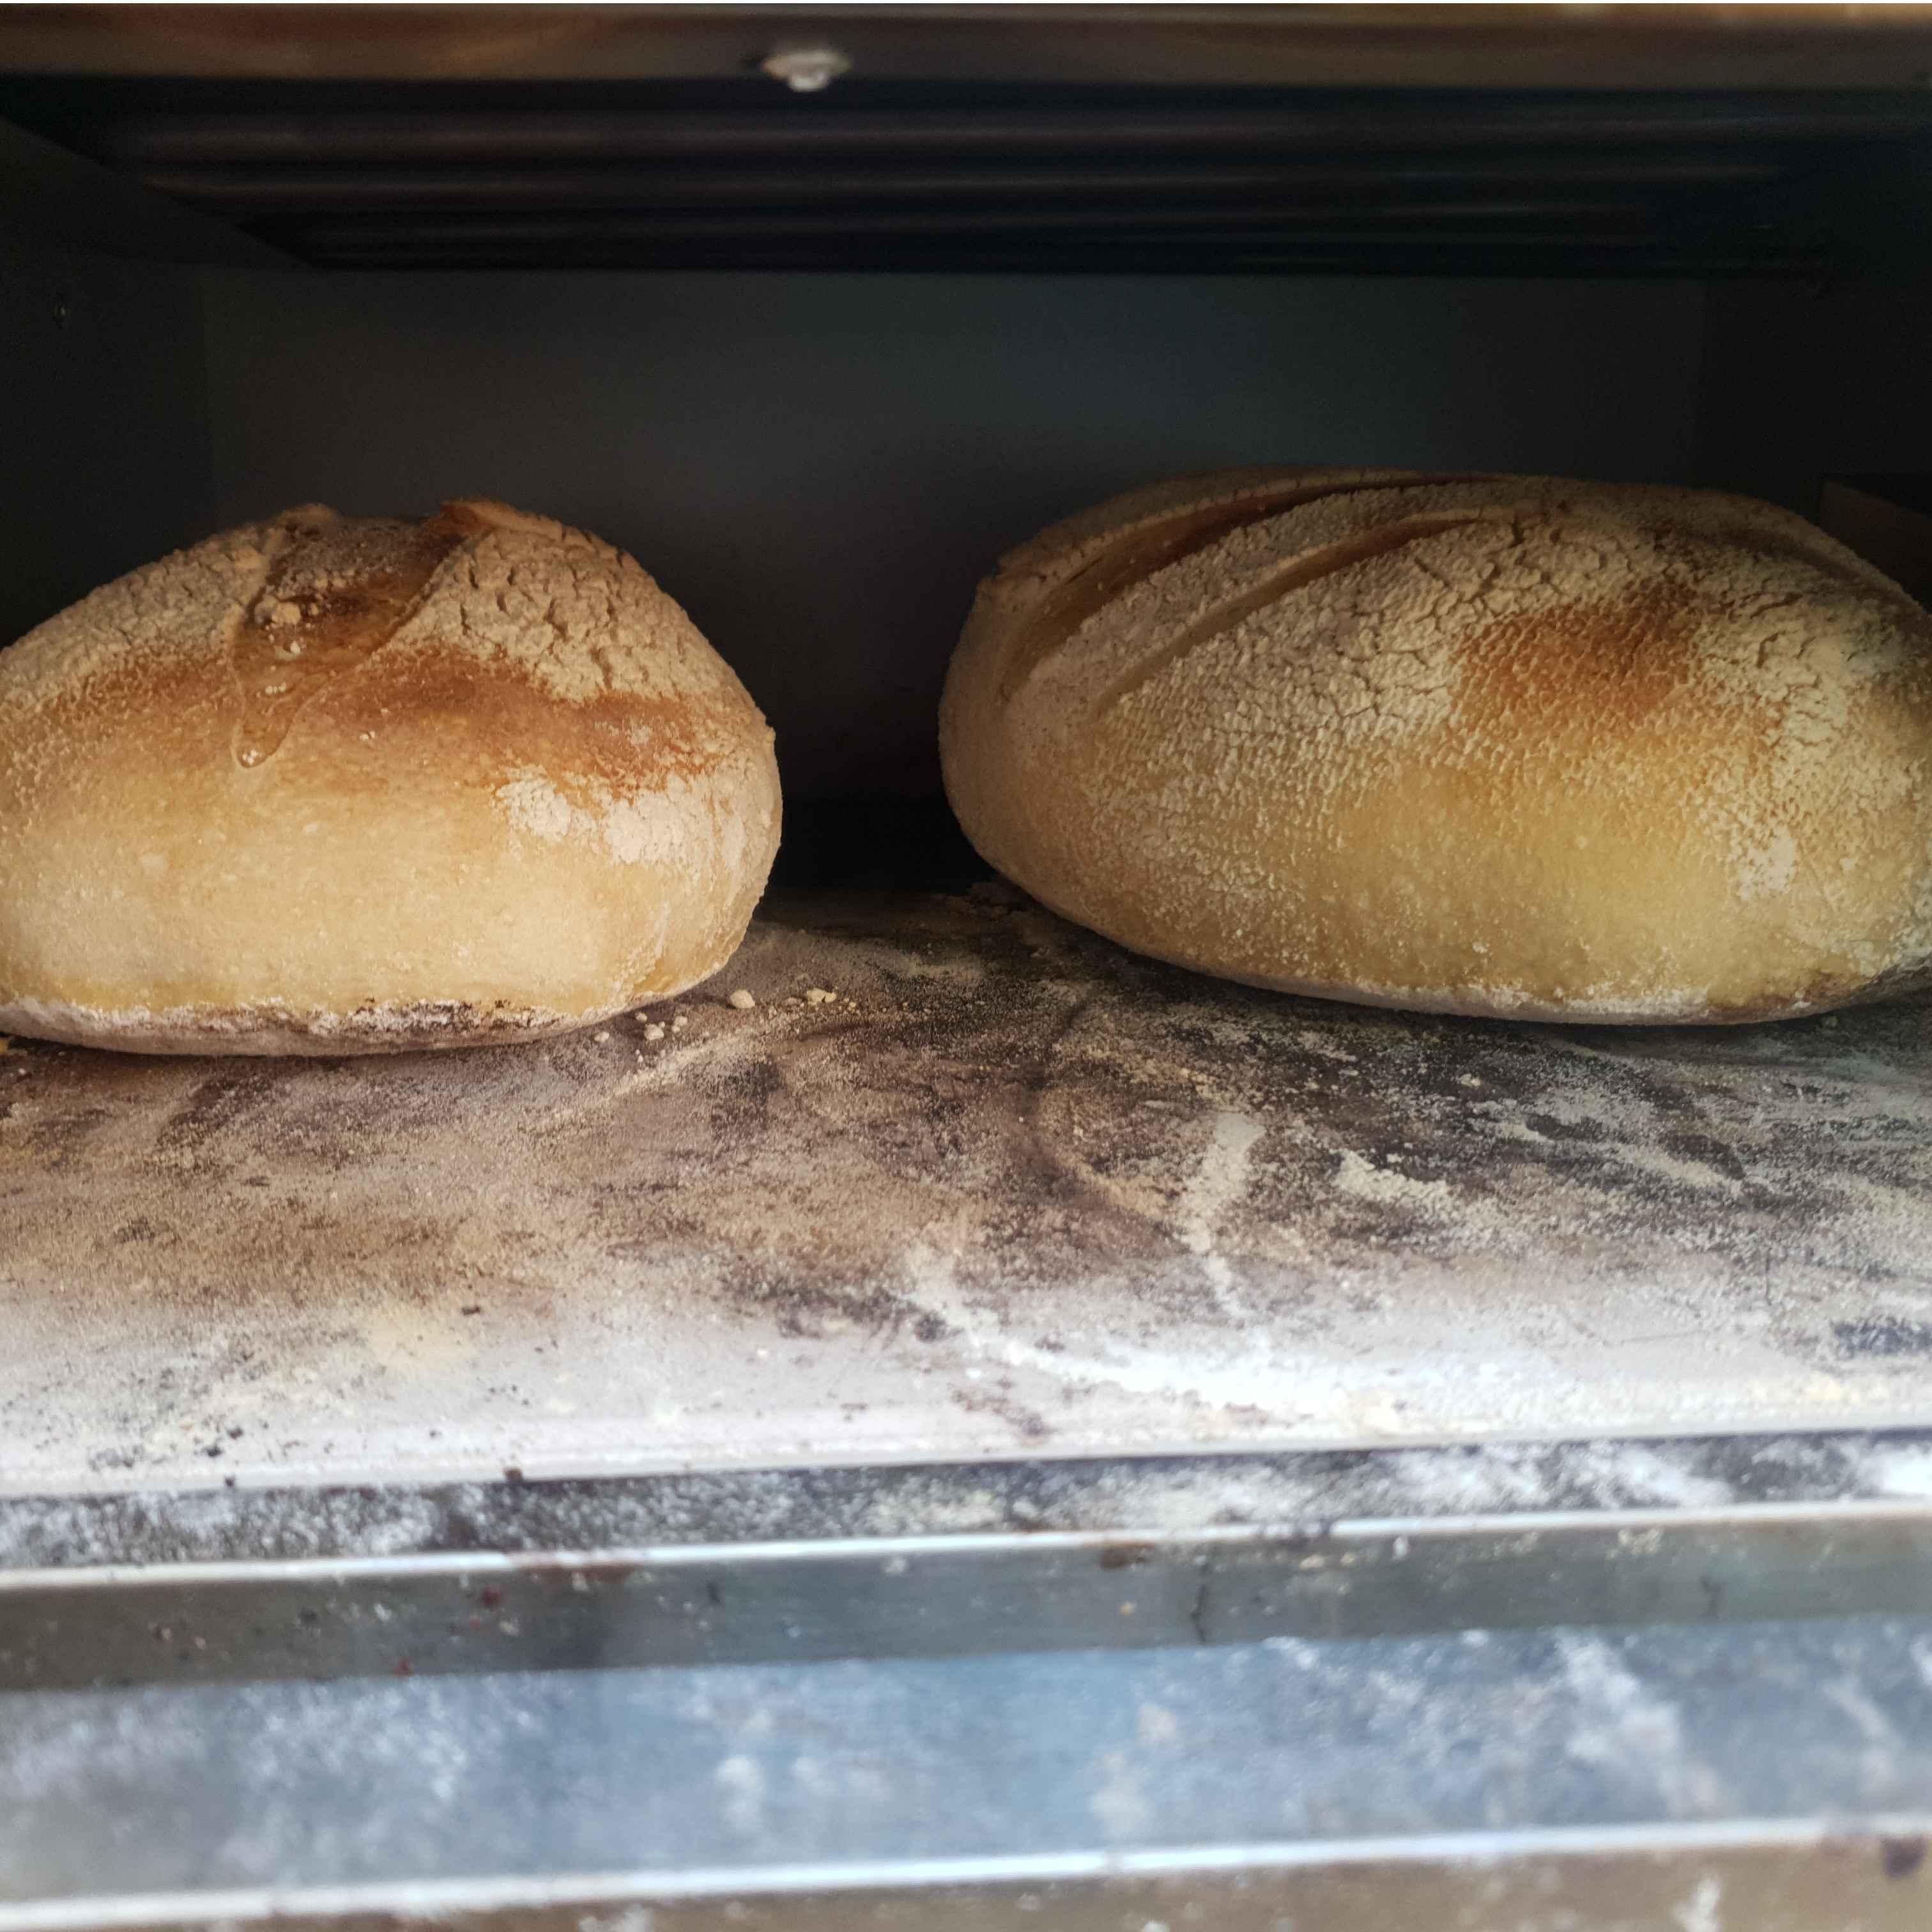 לחם מחמצת בהכנת יד ללא שמרים או חומרים משמרים